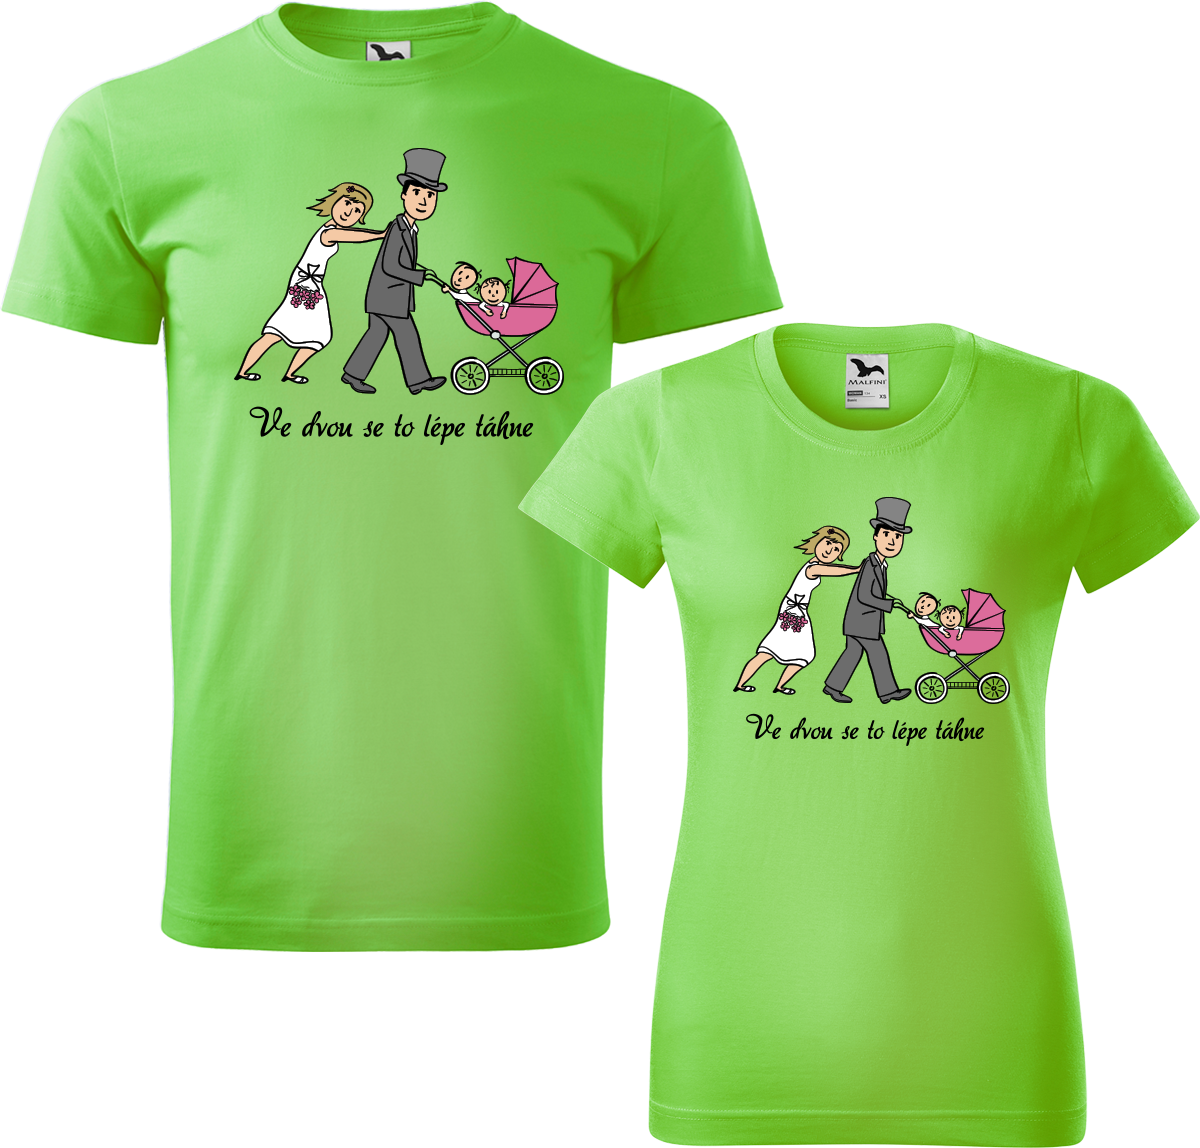 Trička pro páry - Ve dvou se to lépe táhne (kočárek) Barva: Apple Green (92), Velikost dámské tričko: 2XL, Velikost pánské tričko: M